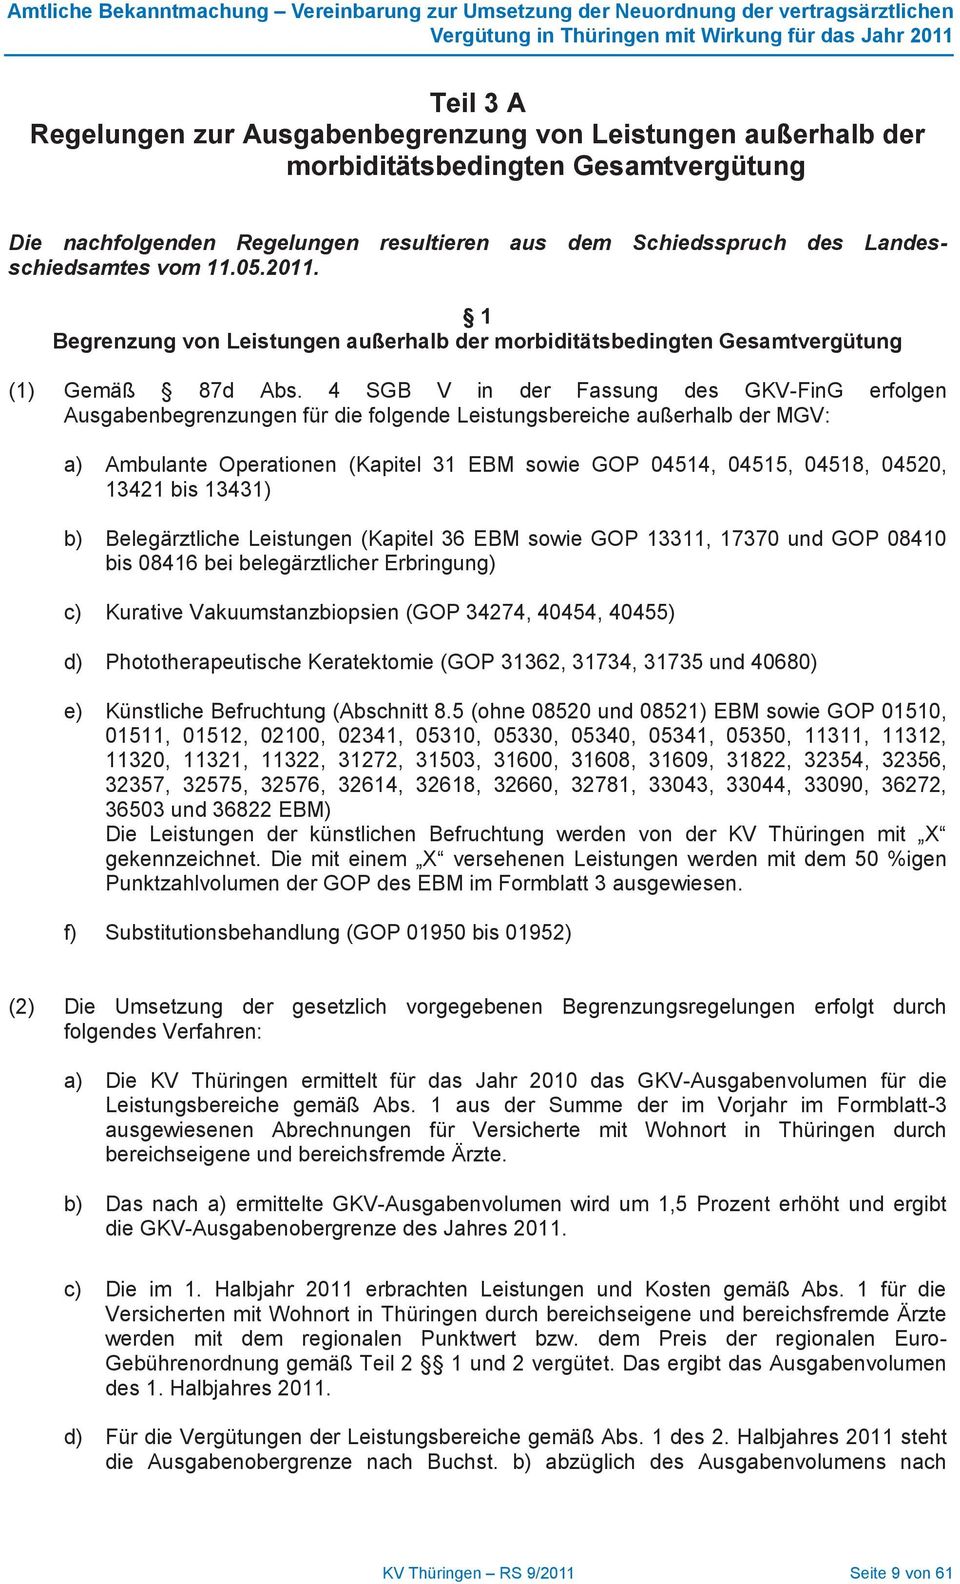 SGB V in der Fassung des GKV-FinG erfolgen Ausgabenbegrenzungen für die folgende Leistungsbereiche außerhalb der MGV: a) Ambulante Operationen (Kapitel 1 EBM sowie GOP 01, 01, 01, 020, 121 bis 11) b)